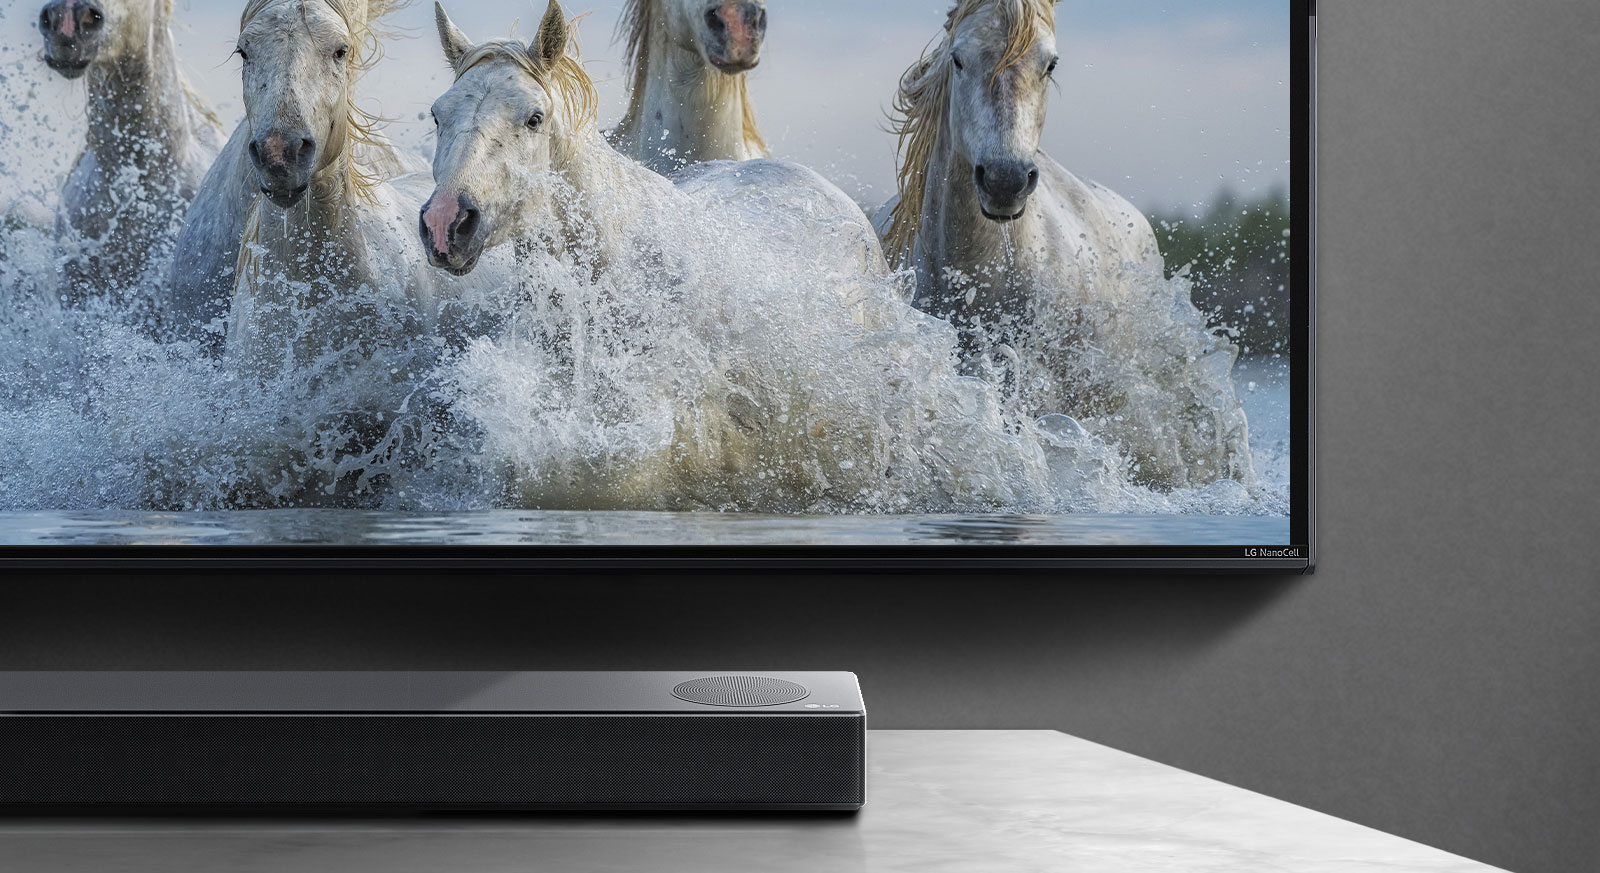 Polovica spodnjega dela zaslona in polovica zvočnikov Soundbar. Televizija prikazuje bele konje, ki tečejo čez vodo.